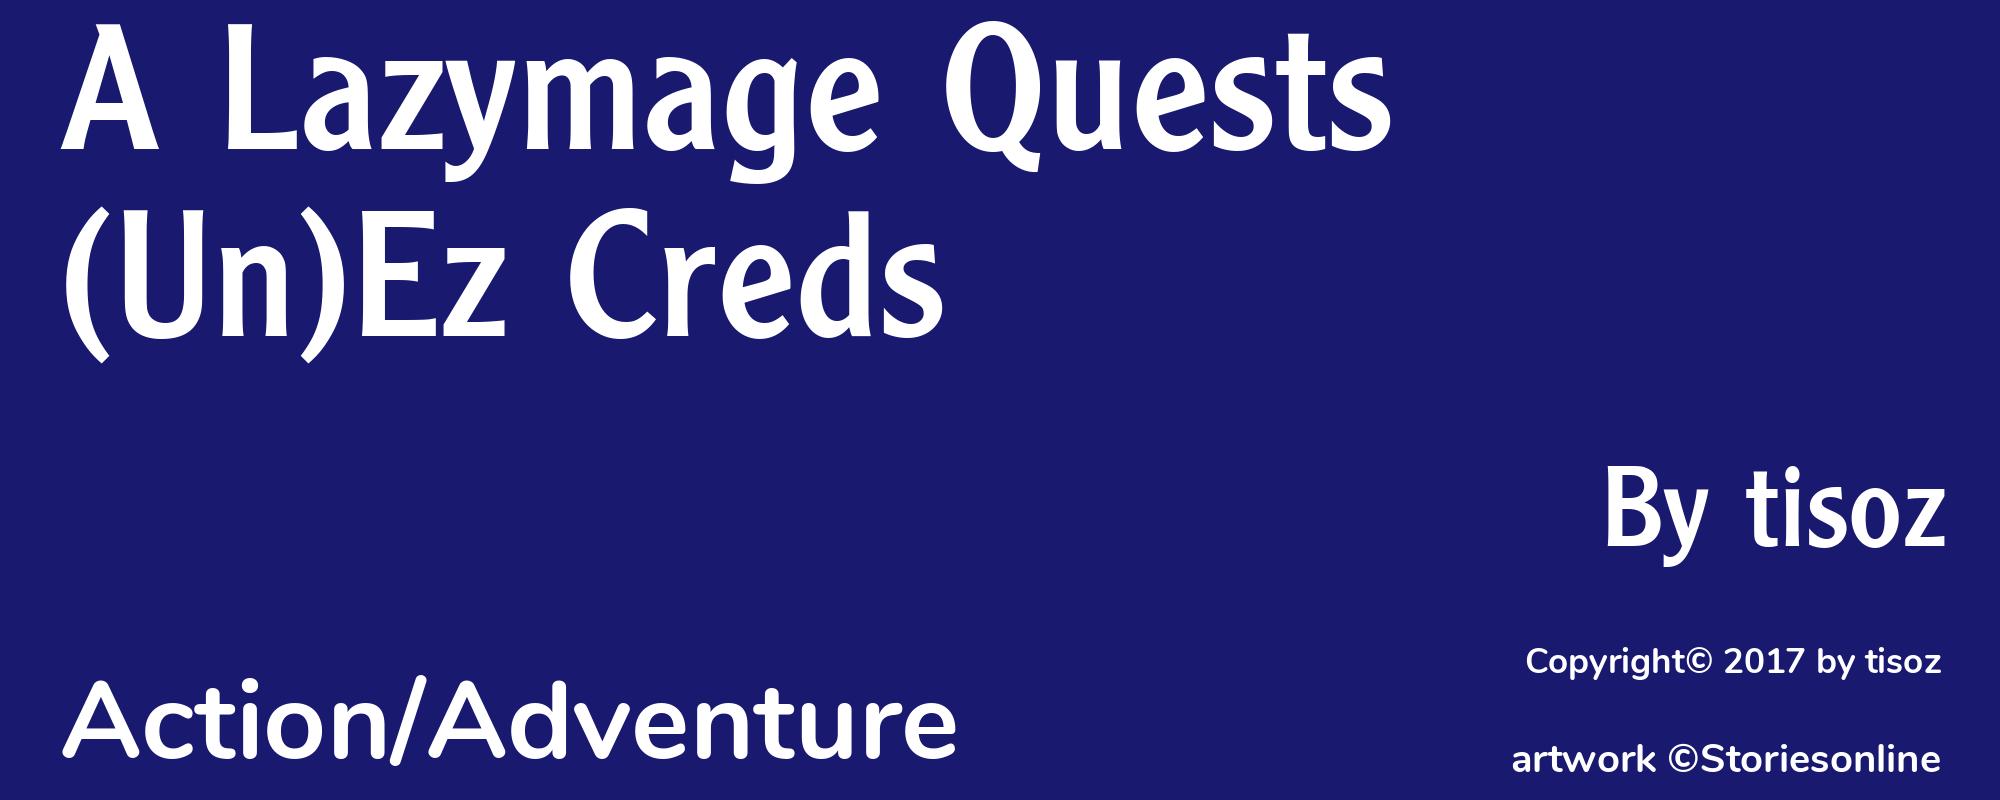 A Lazymage Quests (Un)Ez Creds - Cover